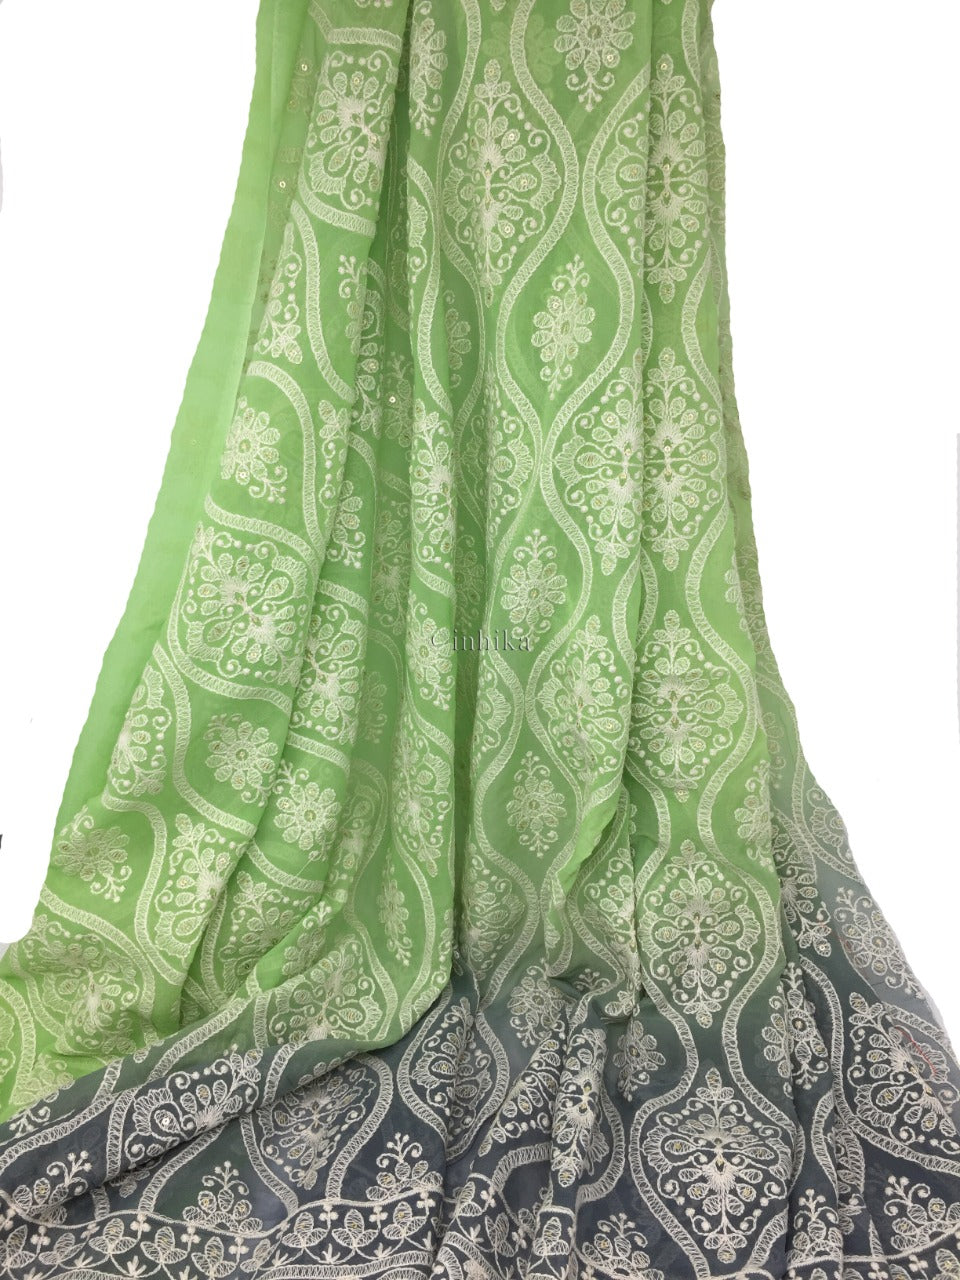 Light green color Indian dress - BOB ADAMS OMEC